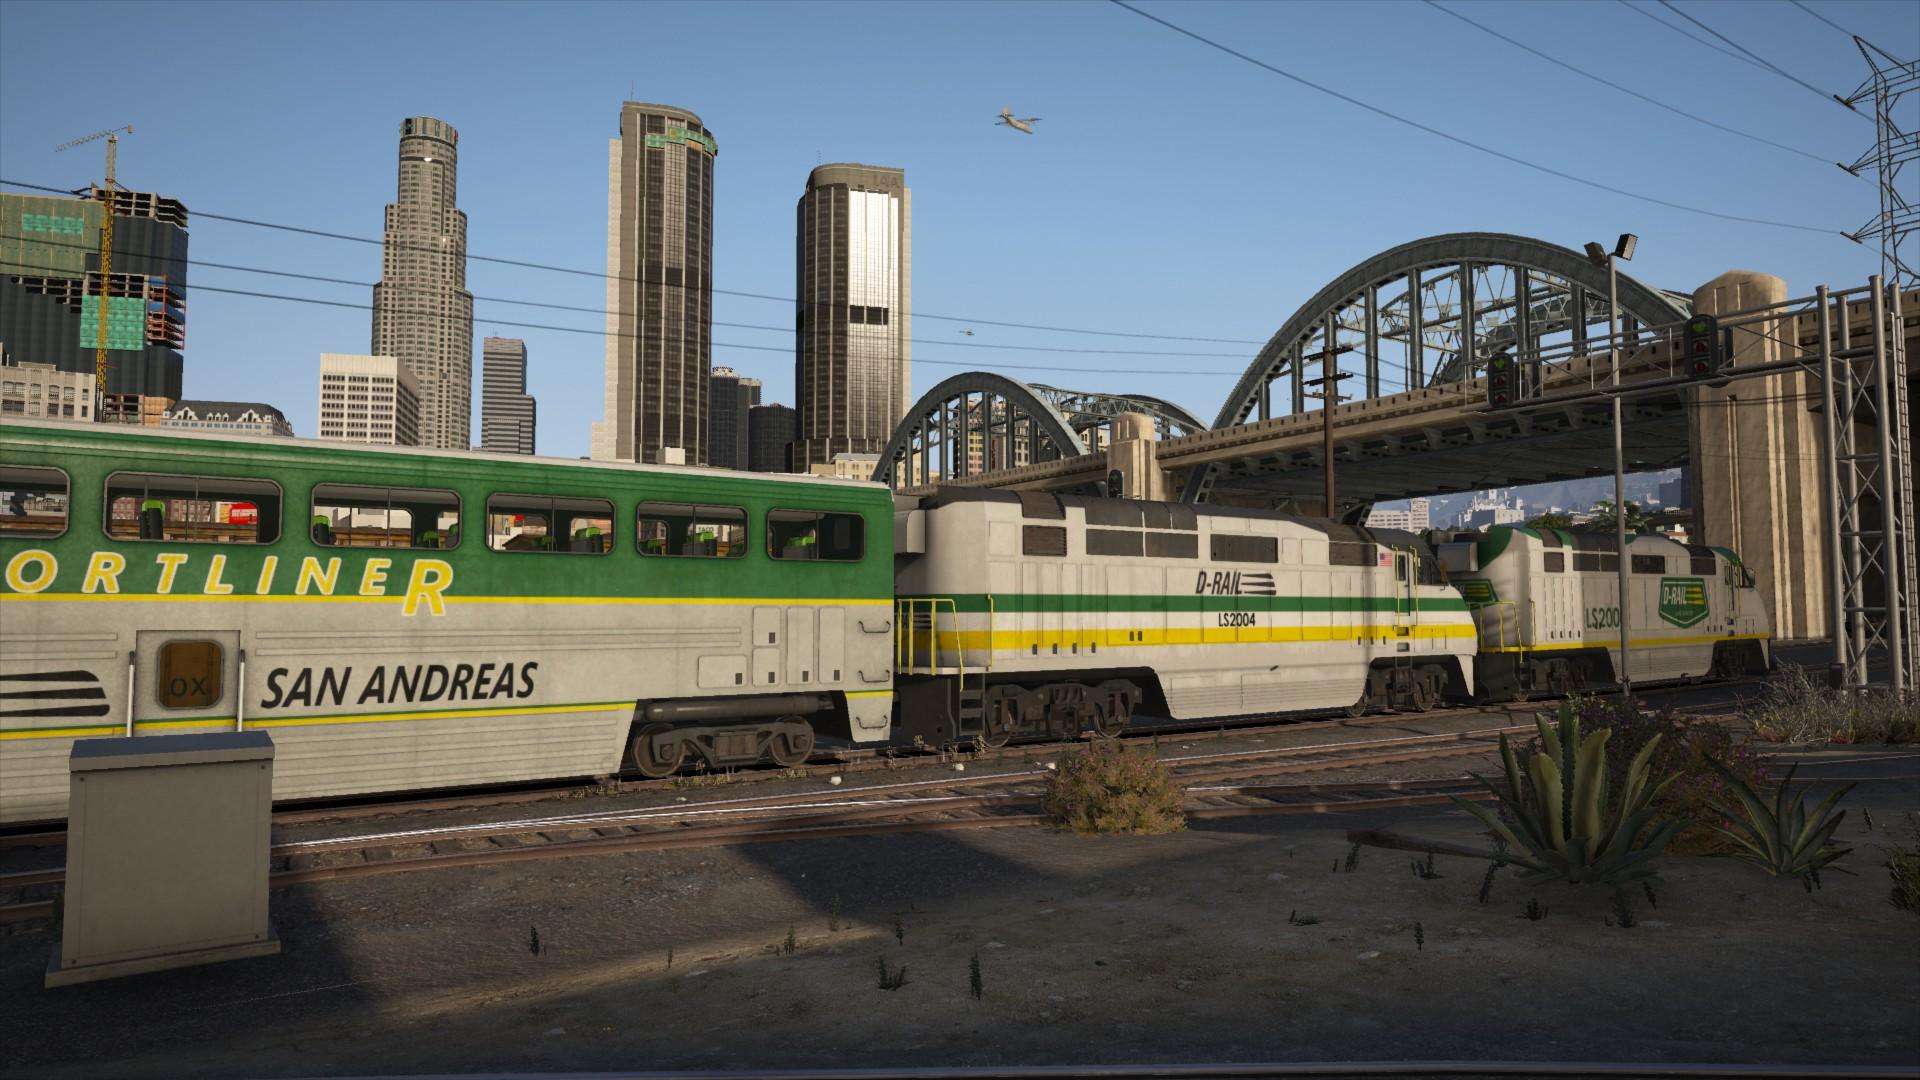 Gta 5 overhauled trains фото 3